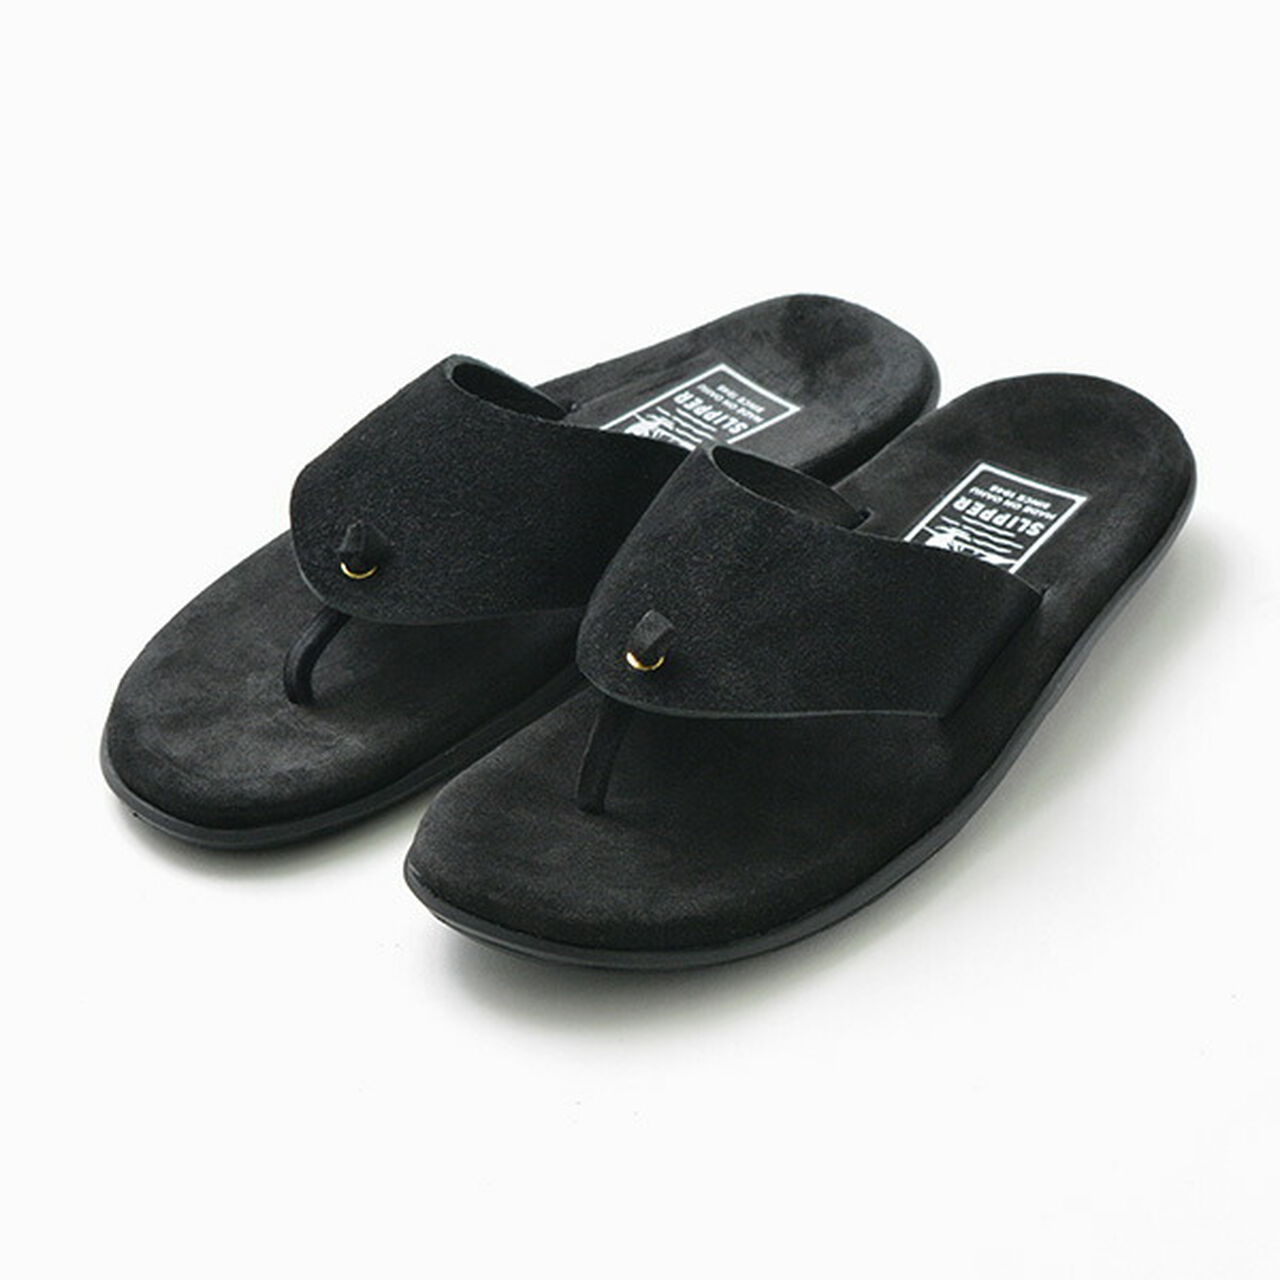 Wide strap thong leather sandal,Black, large image number 0